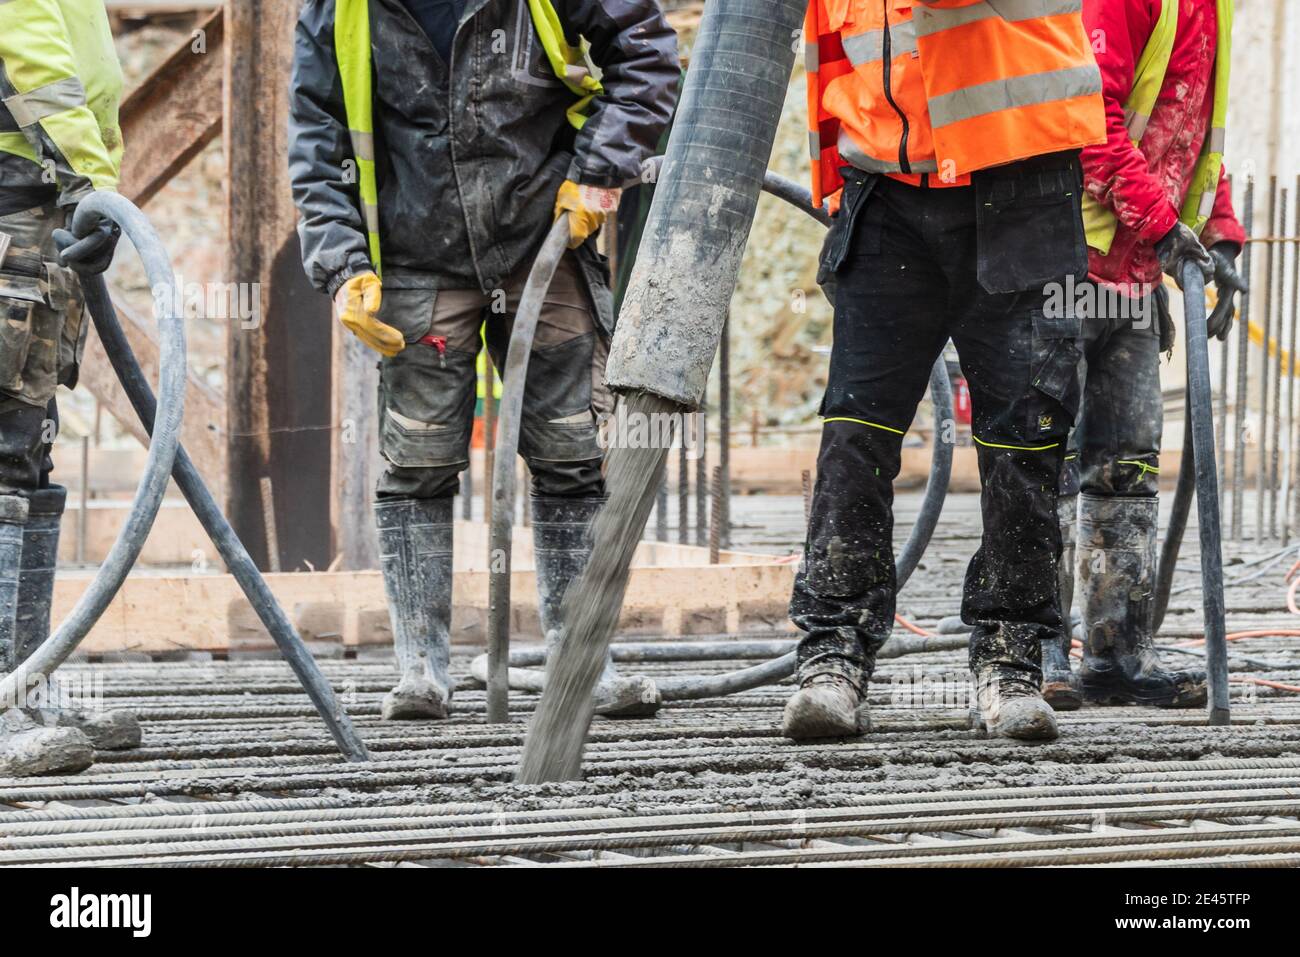 Un grupo de trabajadores de la construcción durante el trabajo de fundición de hormigón, utilizando vibrador de hormigón para compactar hormigón de consistencia rígida. Foto de stock